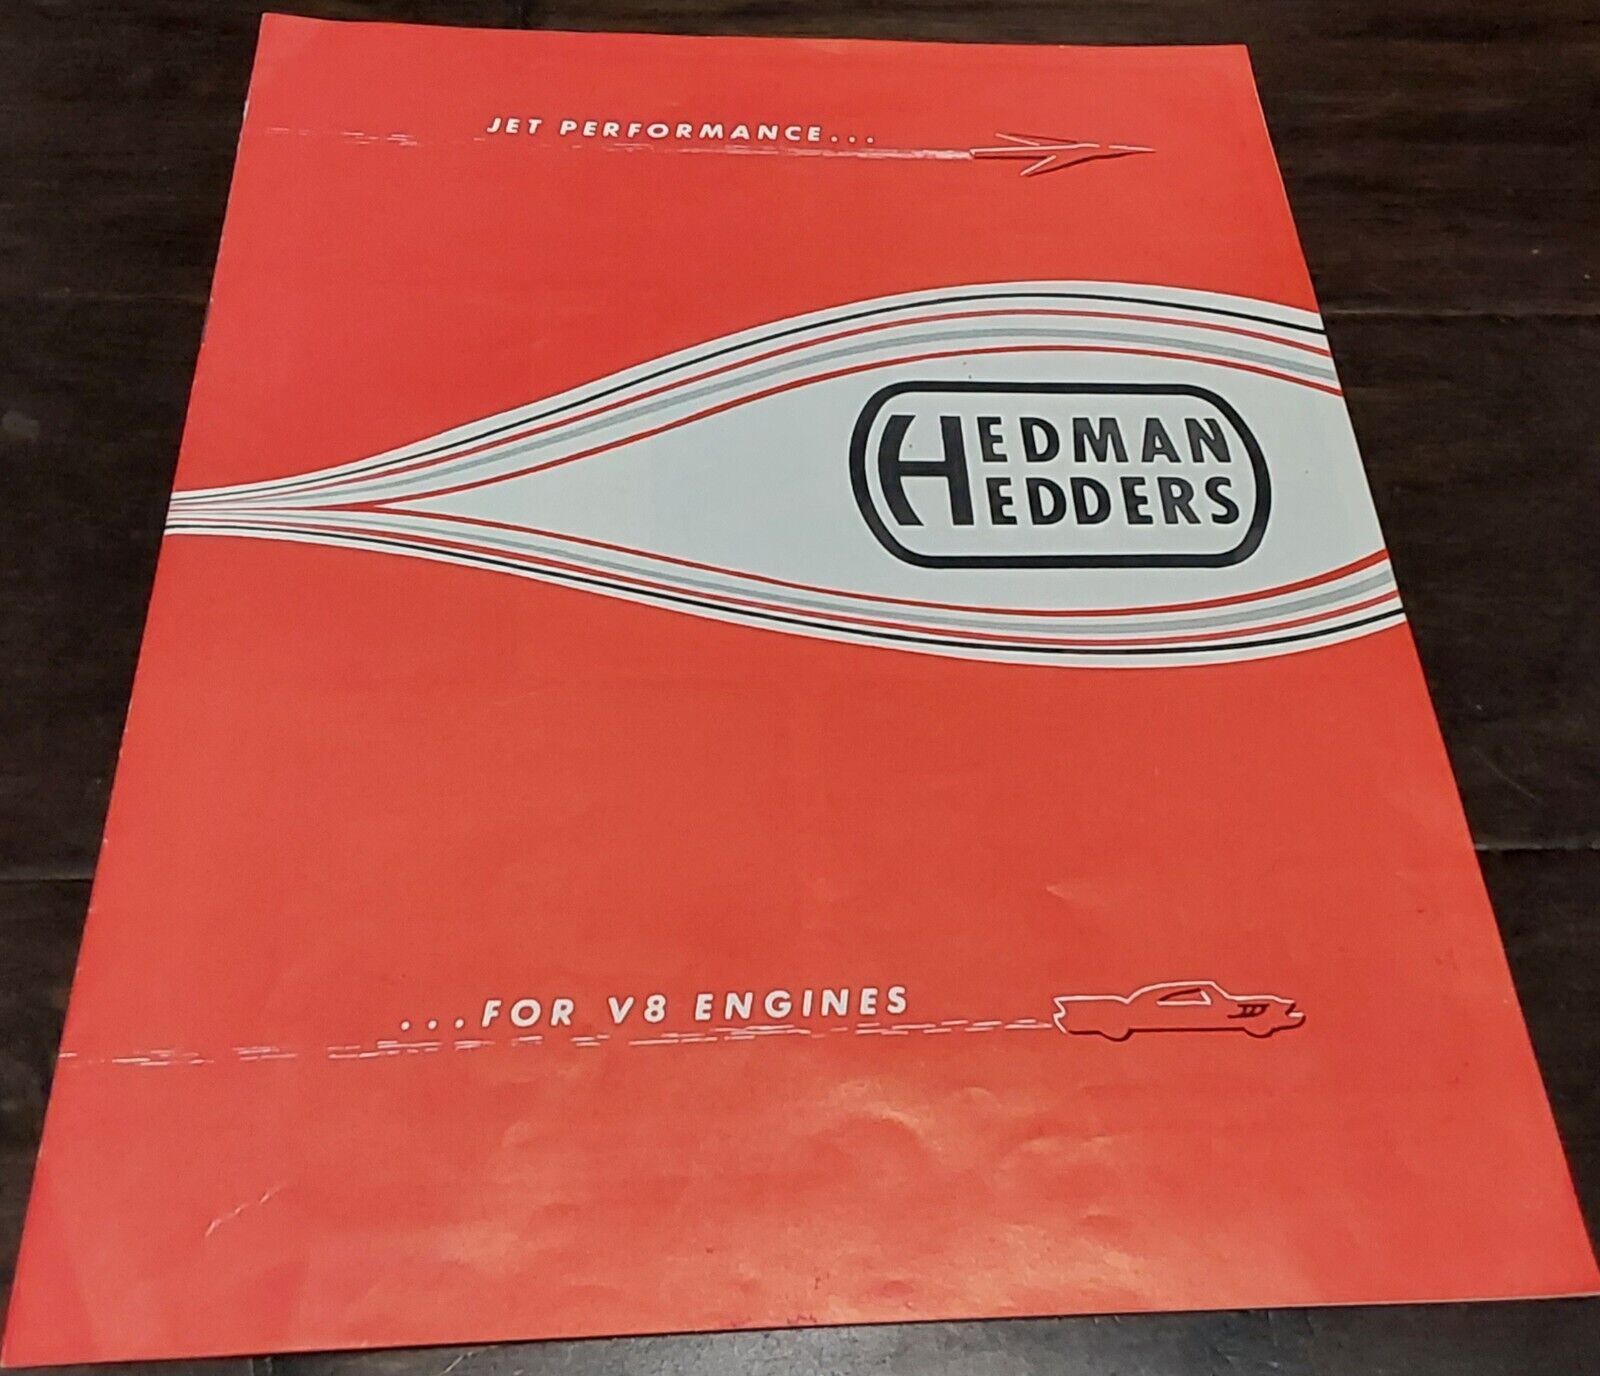 Jet Performance for V-8 Engines: Hedman Hedders headers sales brochure 1968